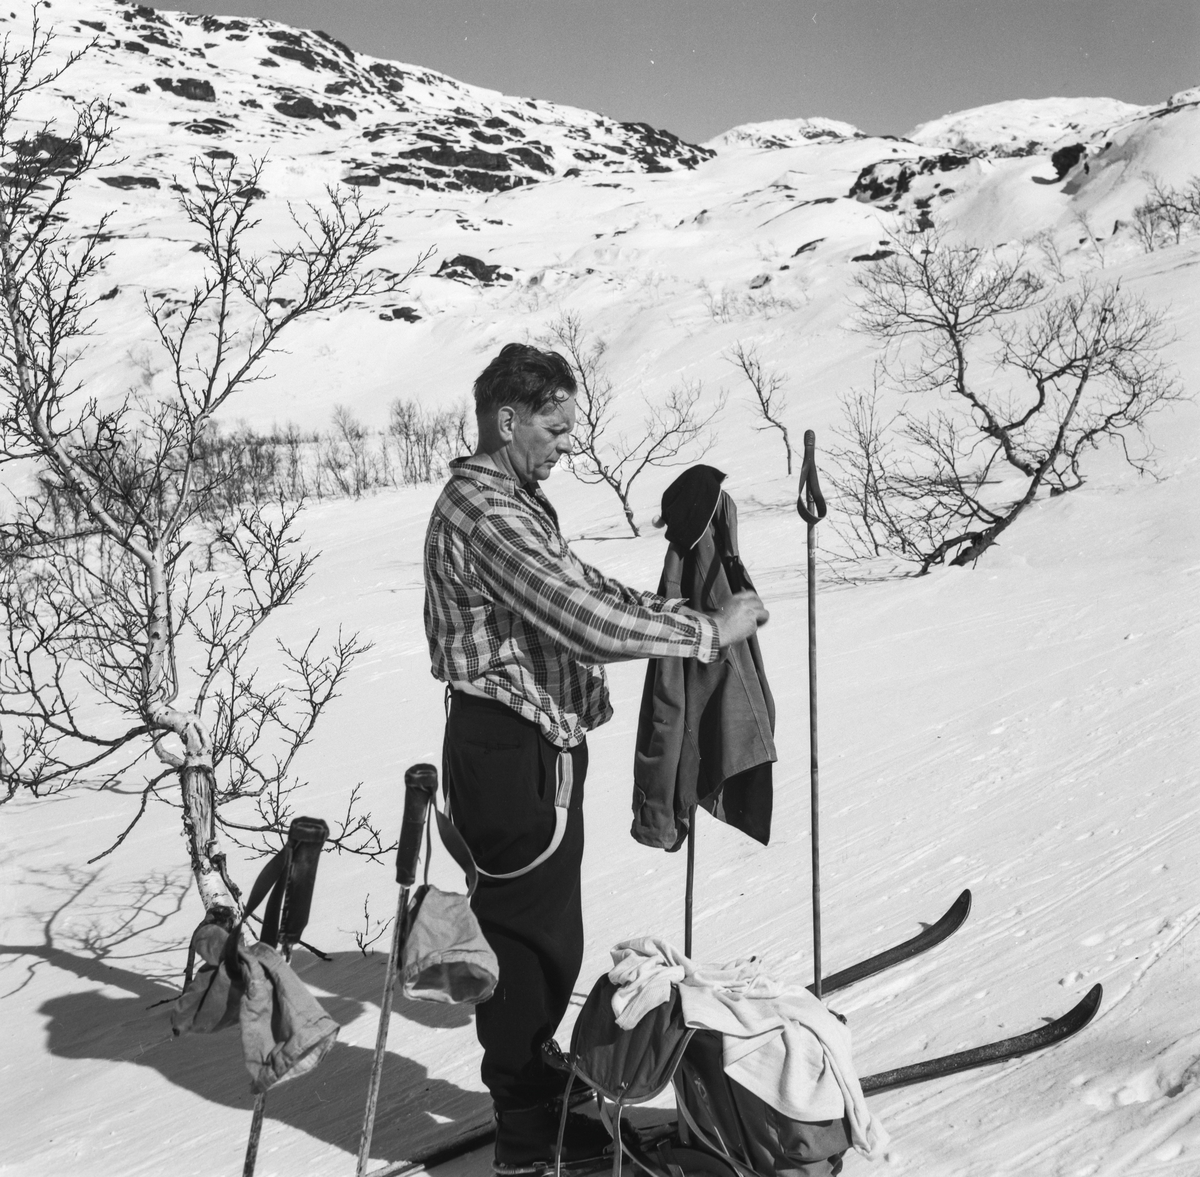 Mann med skiutstyr på fjellet